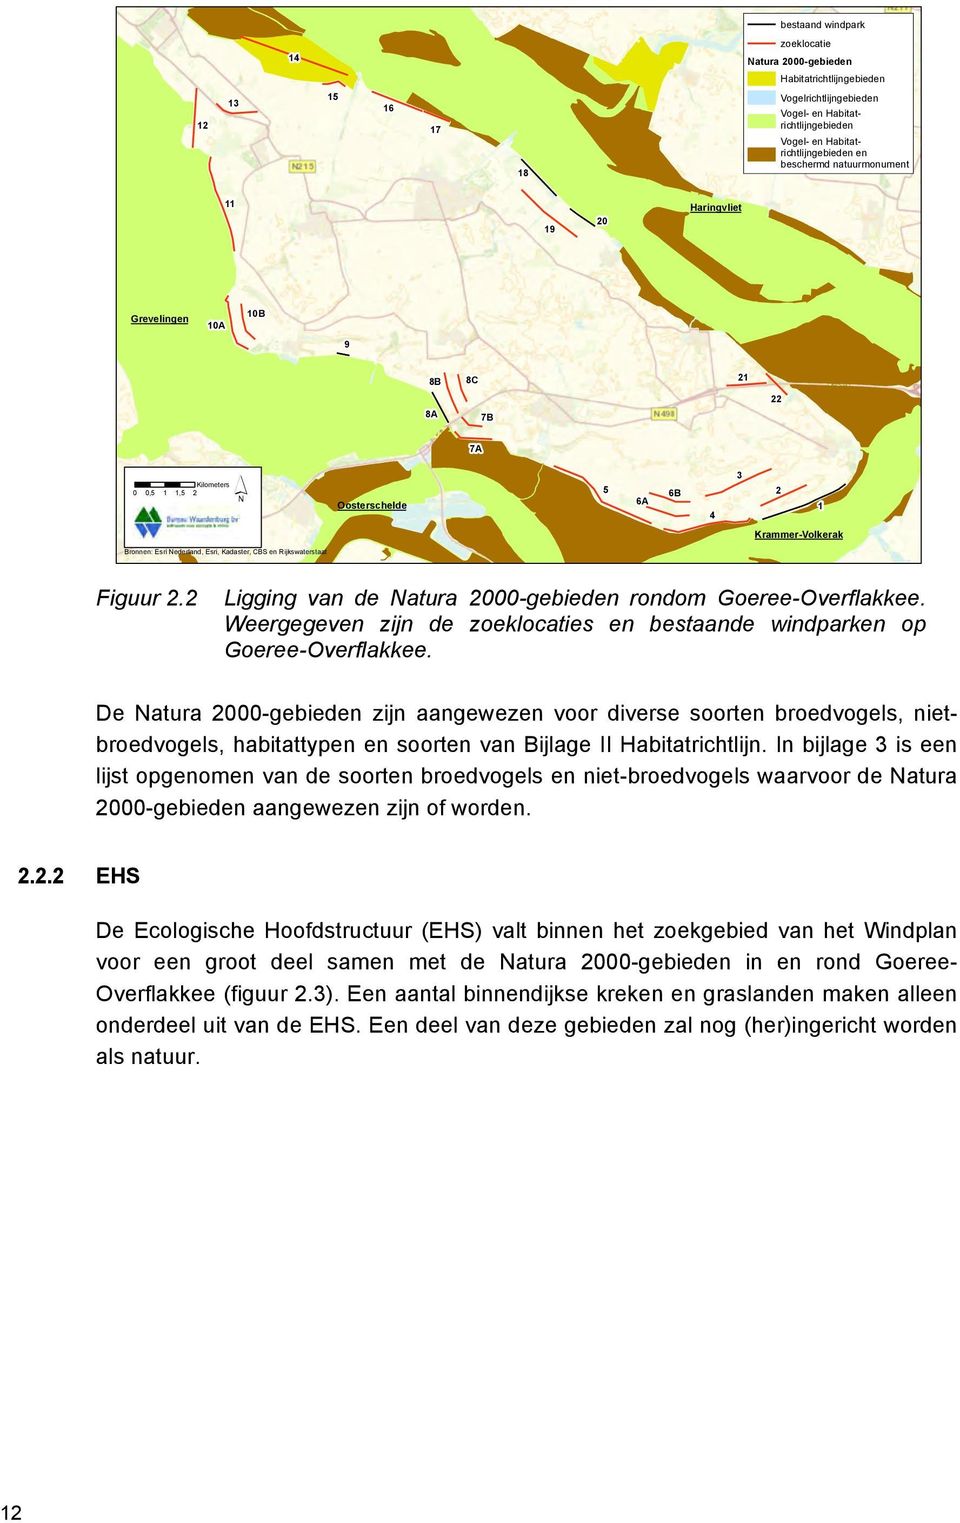 Kadaster, CBS en Rijkswaterstaat Figuur 2.2 Ligging van de Natura 2000-gebieden rondom Goeree-Overflakkee. Weergegeven zijn de zoeklocaties en bestaande windparken op Goeree-Overflakkee.